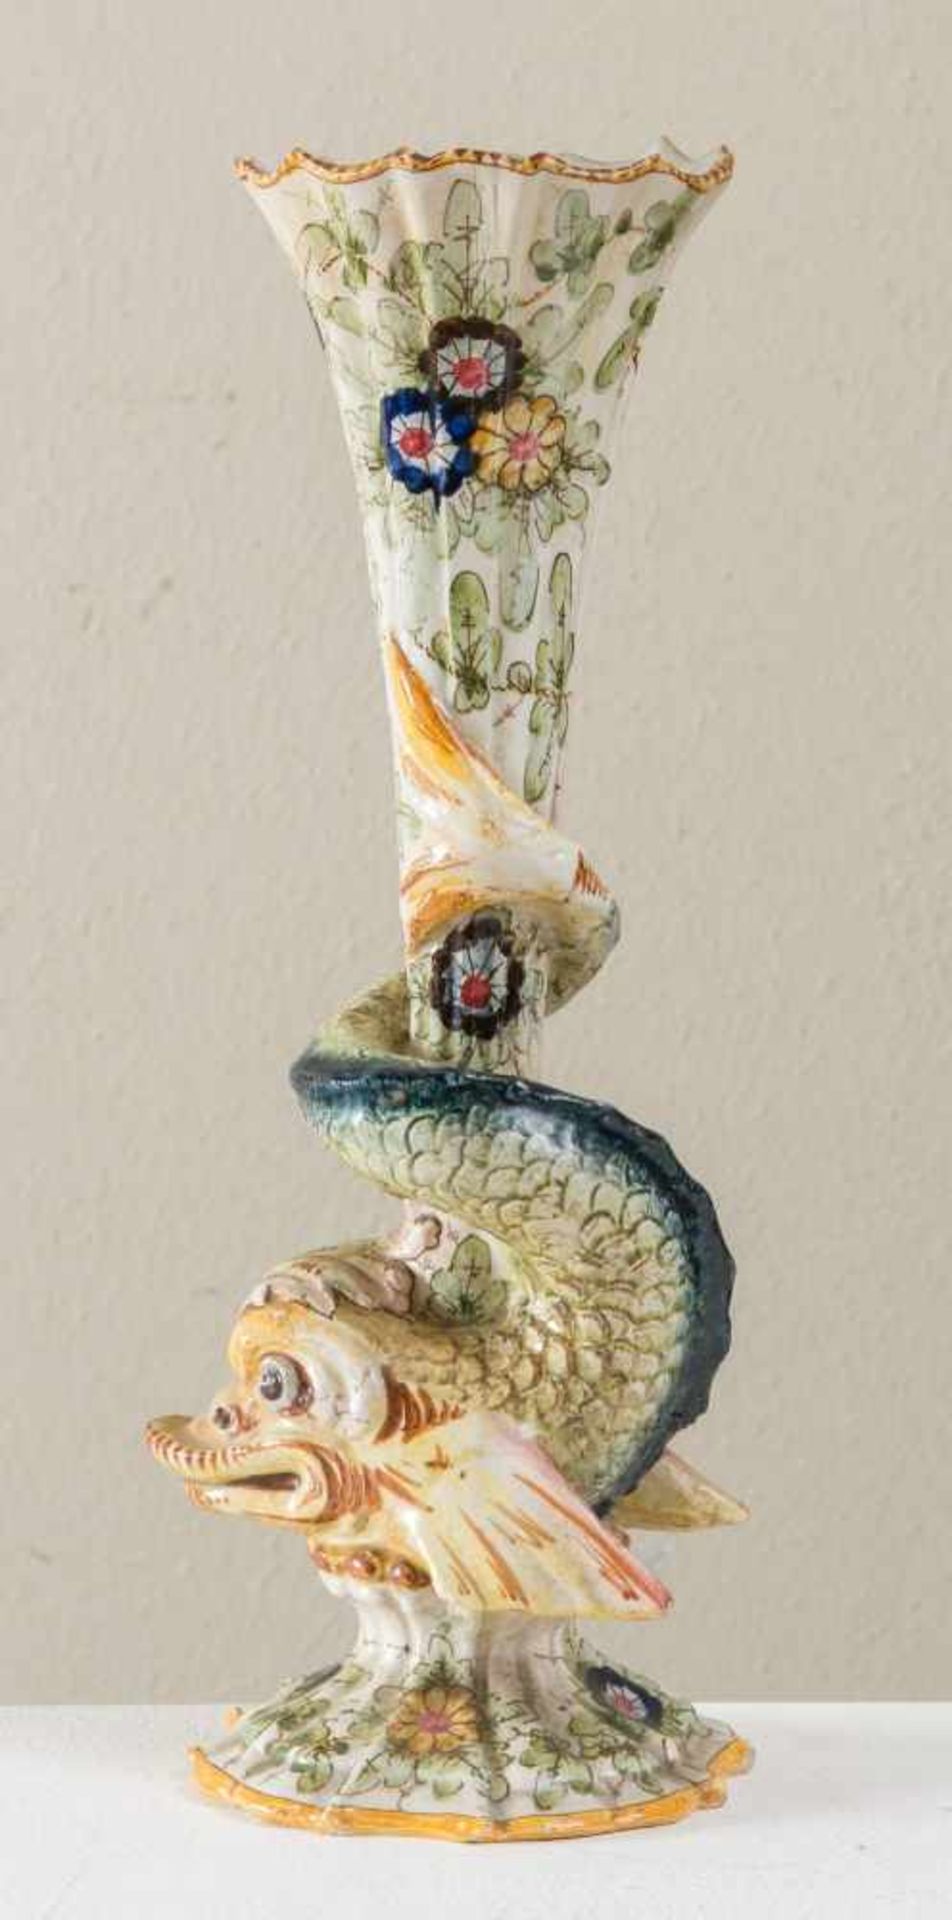 FRATELLI MINARDI (Faenza, inizio del XX secolo). Vaso in maiolica a foggia di tritone, sormontato da